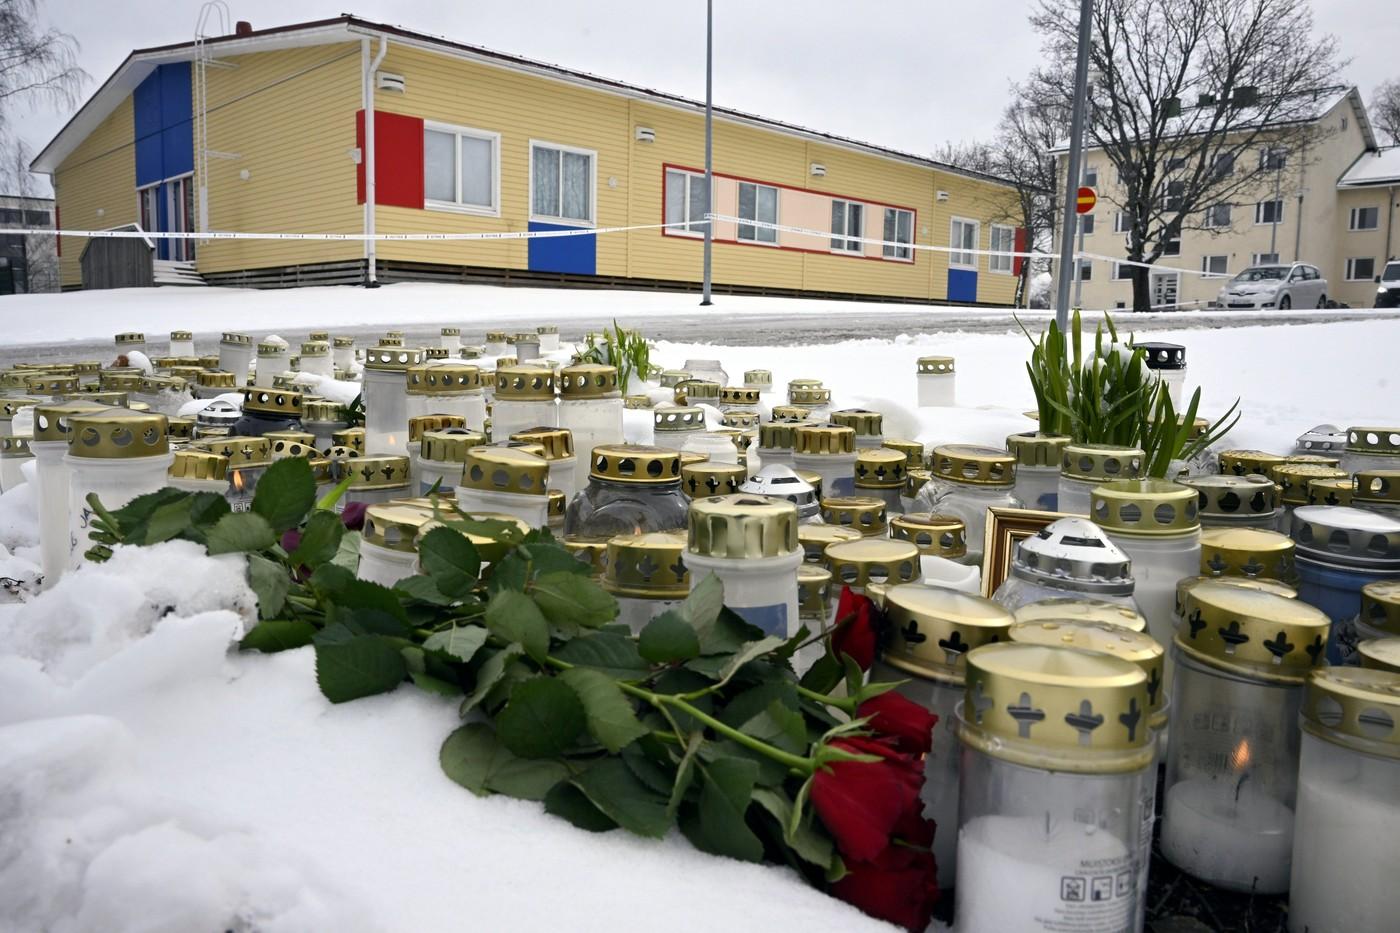 Elevul de 12 ani din Finlanda și-a ucis colegul și a rănit alți doi pentru că ar fi fost victima bullyingului. Nu va răspunde penal pentru faptele sale